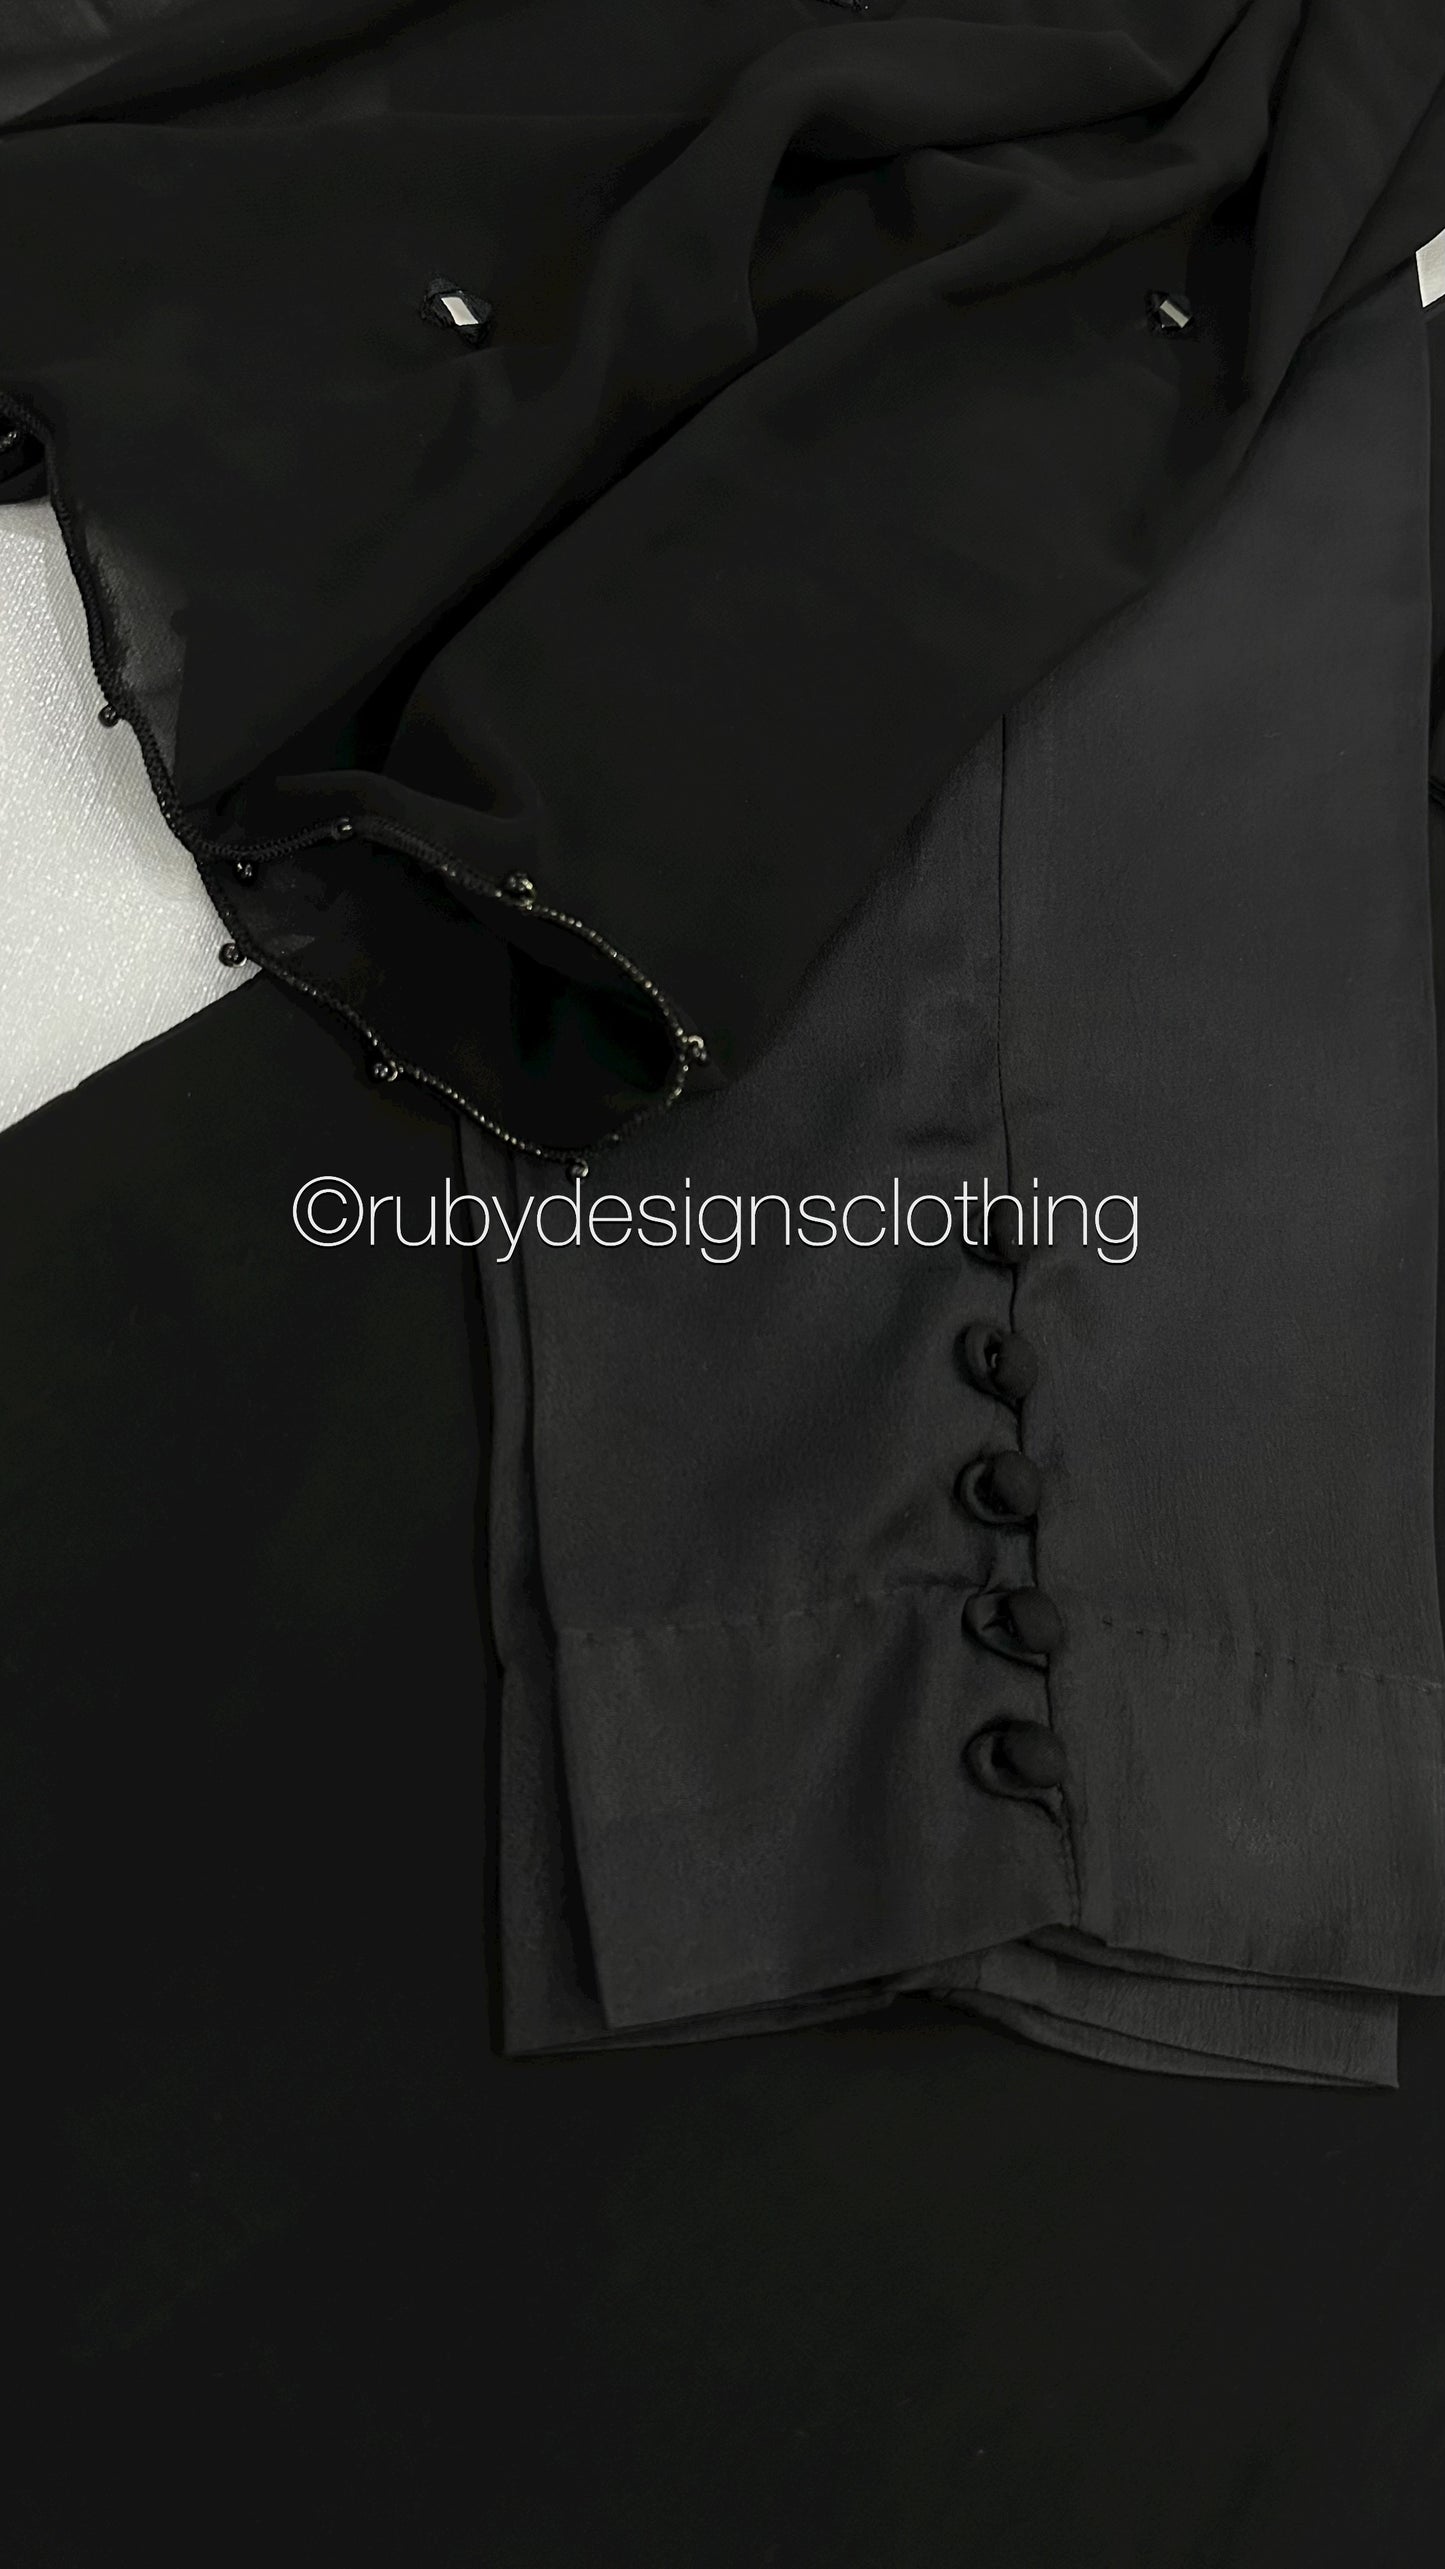 KAYRA Black - 3 Piece Black Chiffon Suit with Split Sleeve